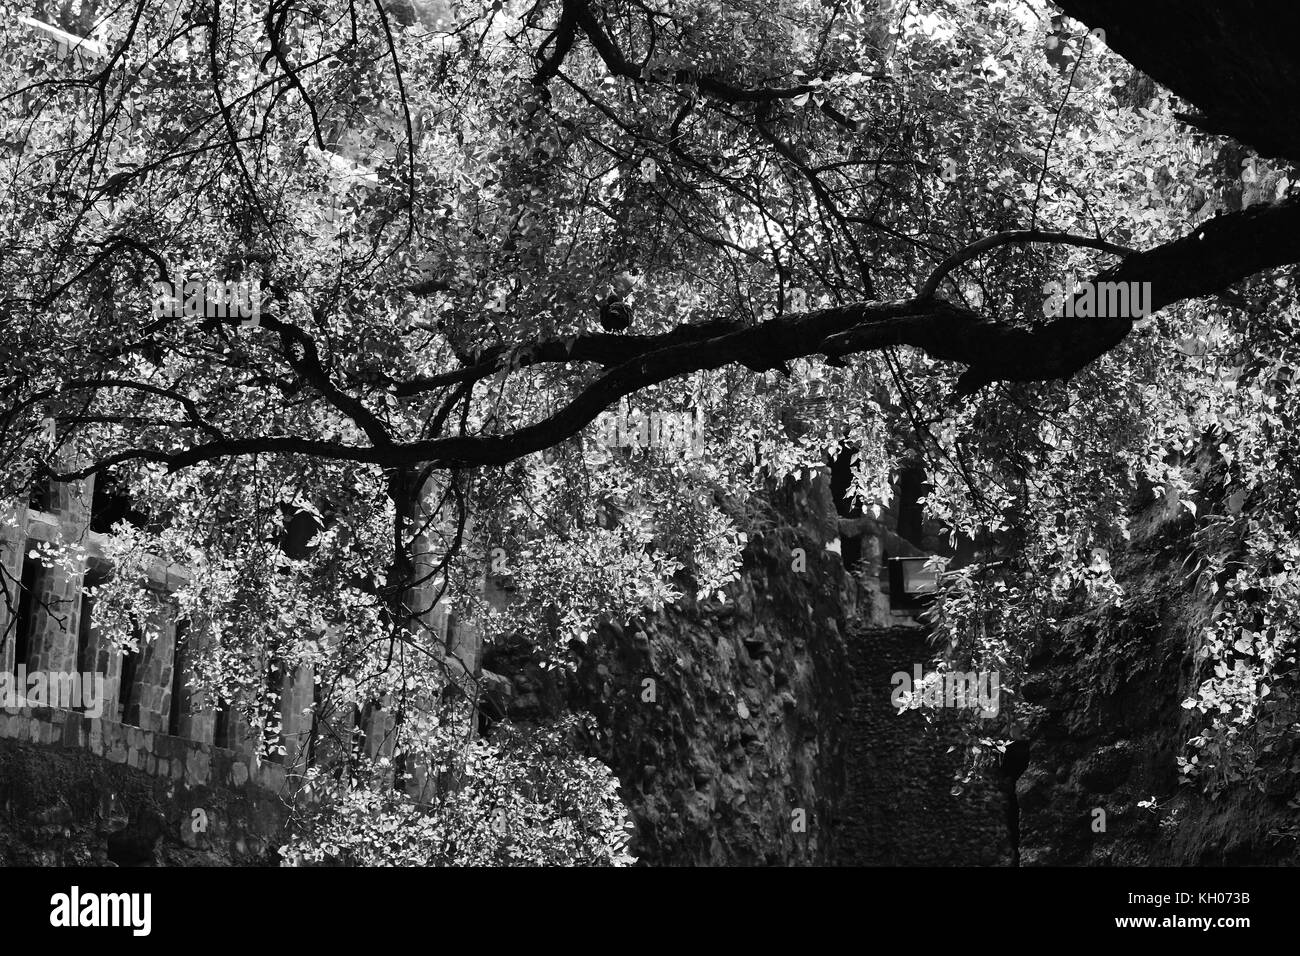 Retroilluminato con un ramo di albero in monocromatico o ramo di albero illuminato dalla luce solare in bianco e nero. Foto Stock